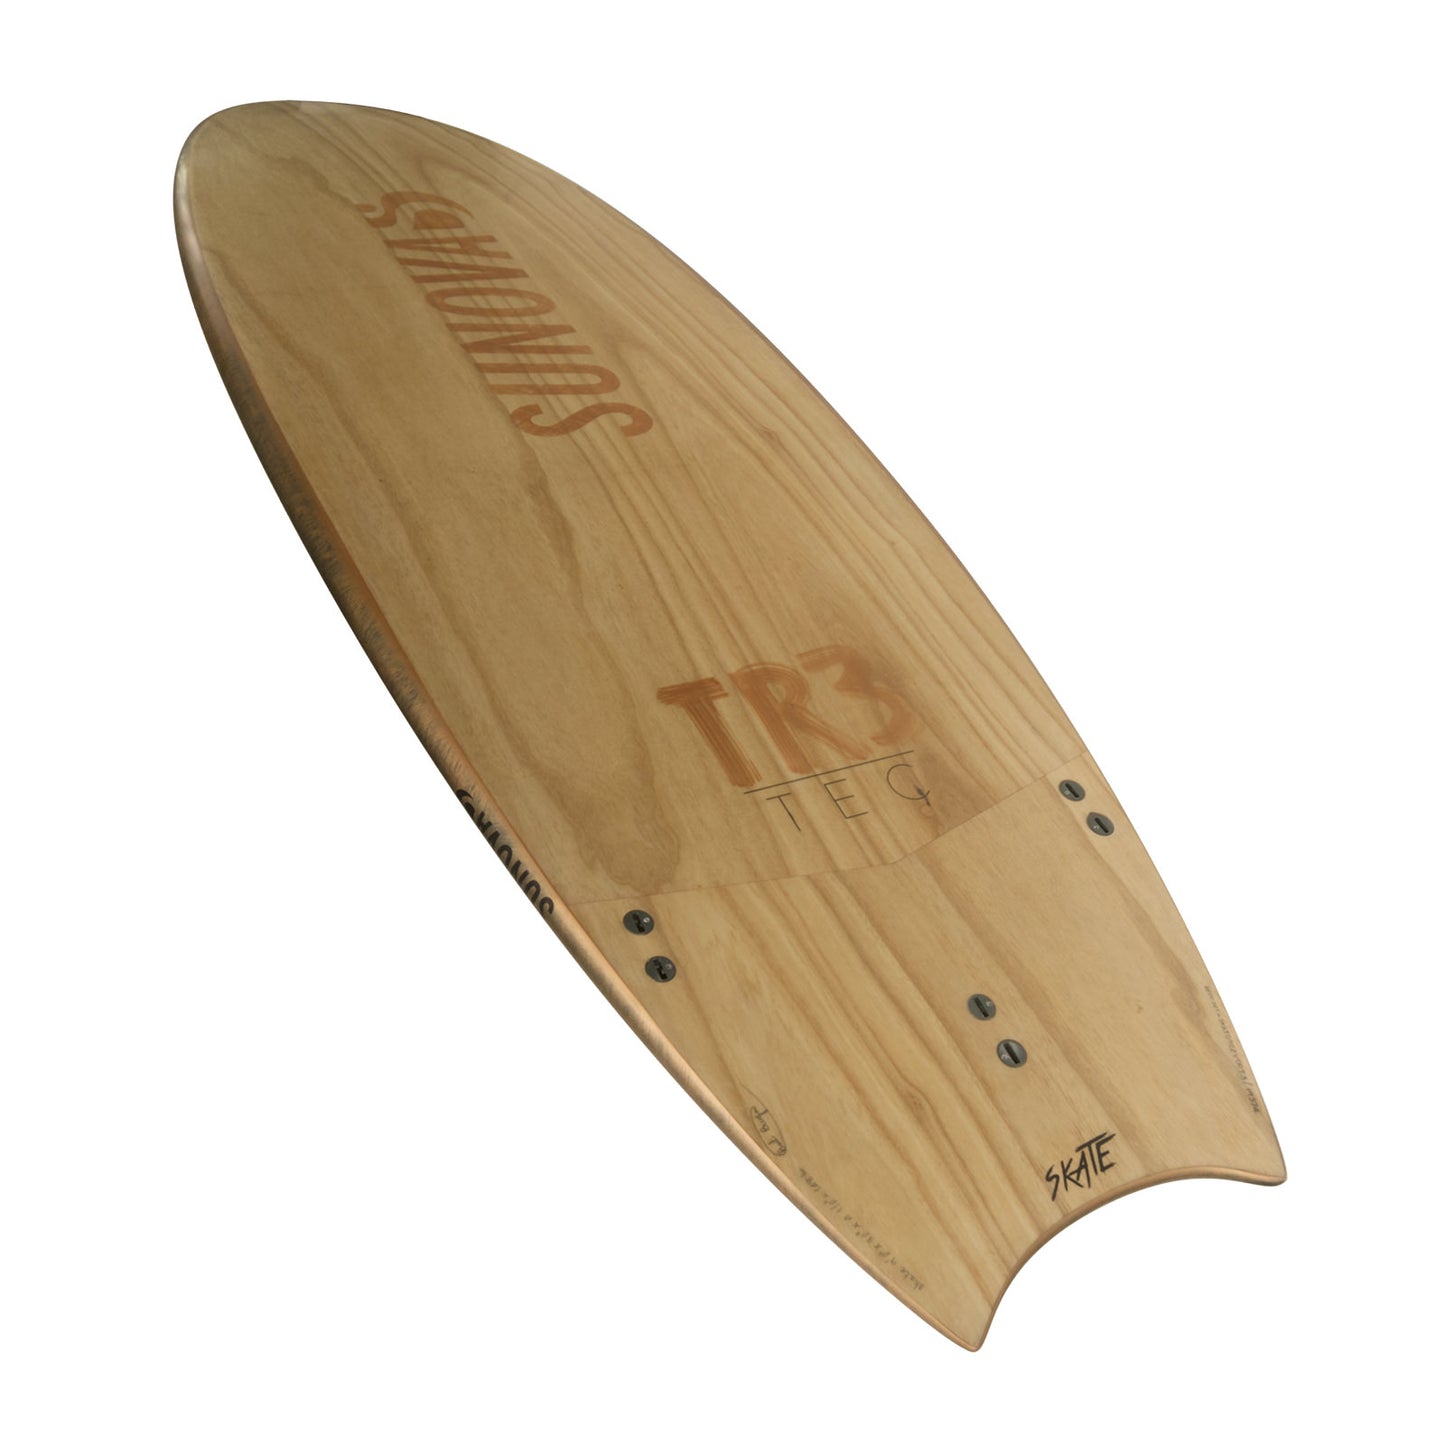 Perspektivische Heck Ansicht der Unterseite des Sunova Skate Wave SUP Board in der TR3 Bauweise.